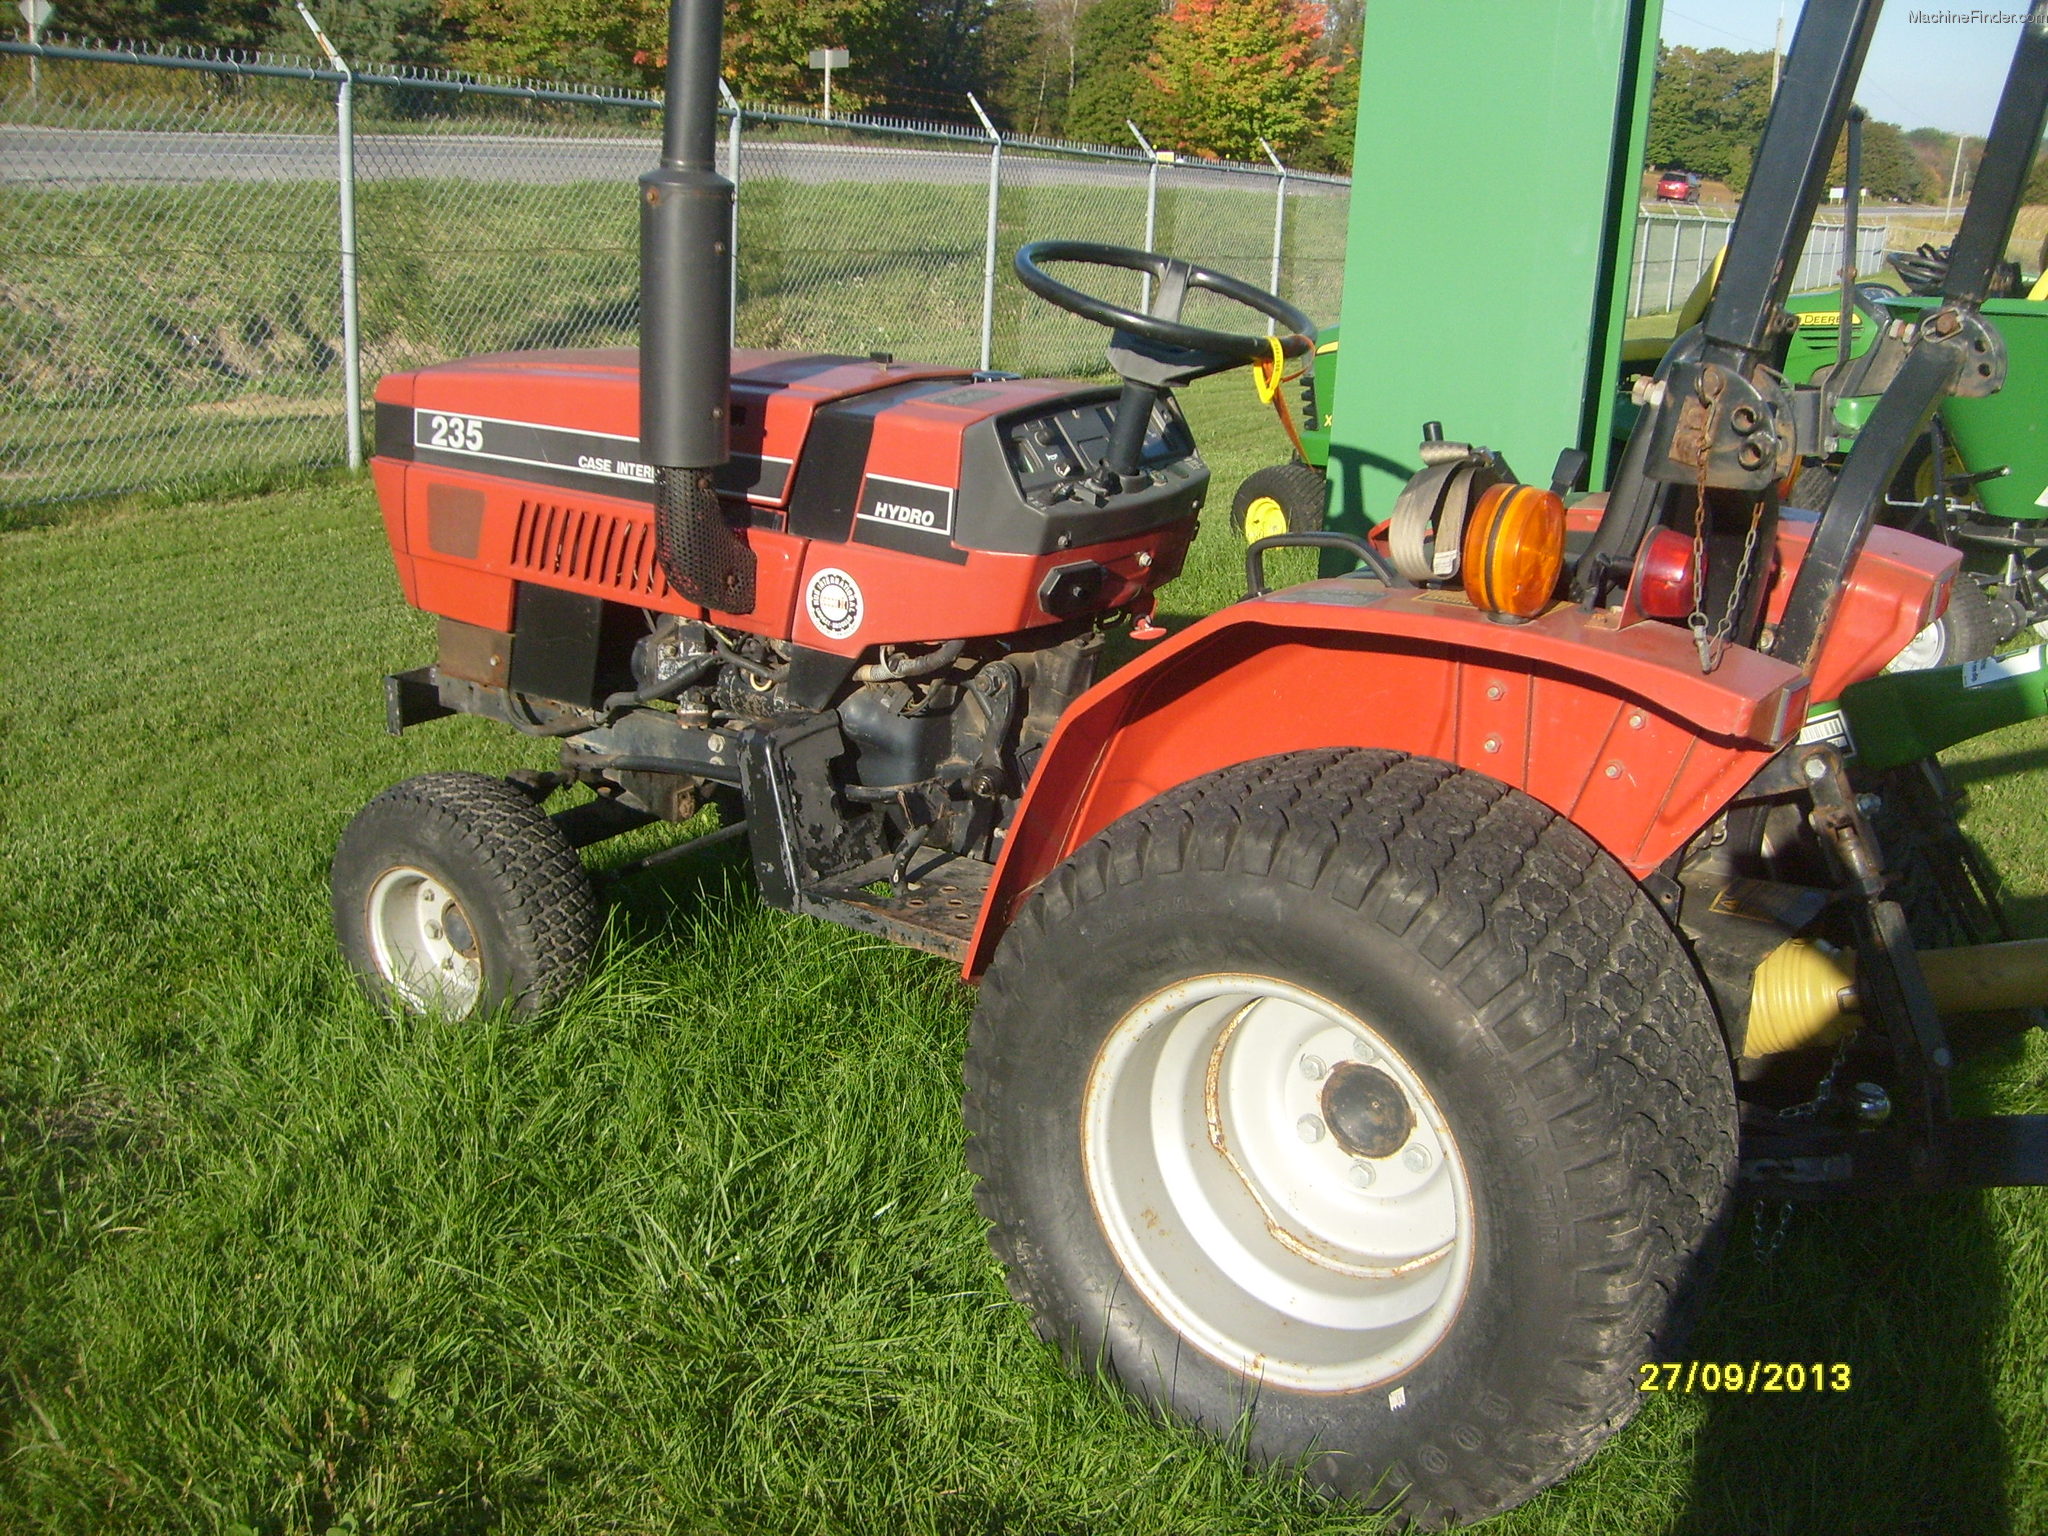 1990 Case IH 235 Tractors - Compact (1-40hp.) - John Deere ...